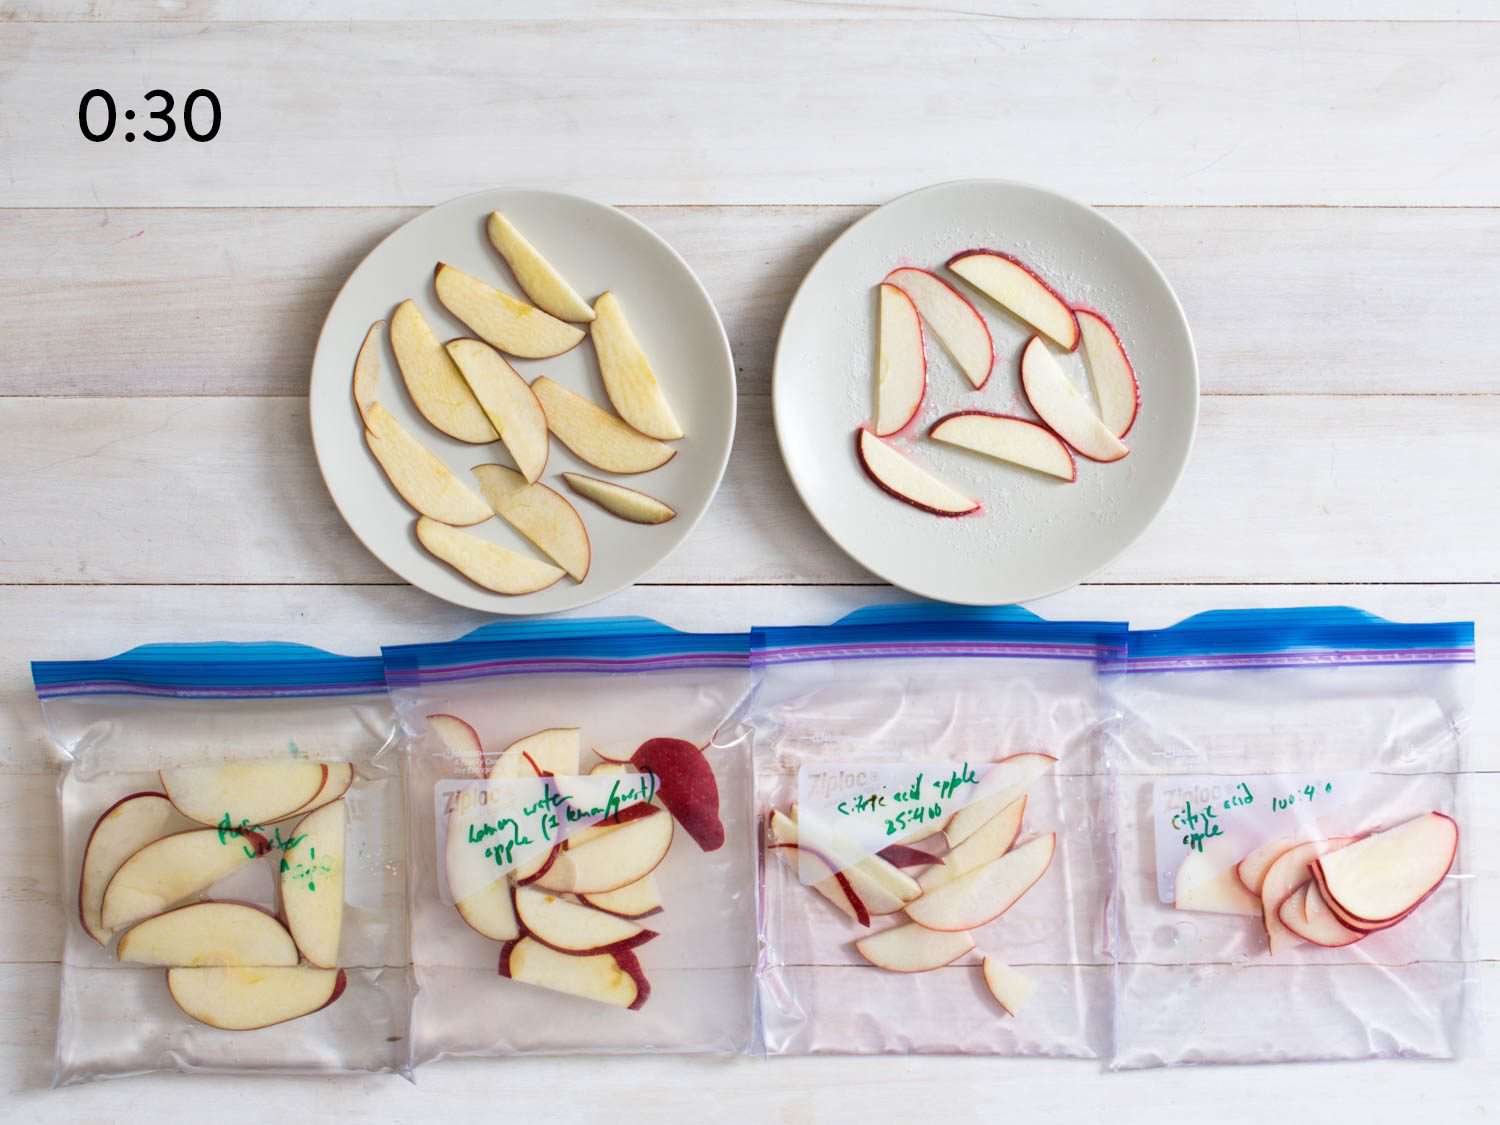 30秒后比较袋装切好的苹果。